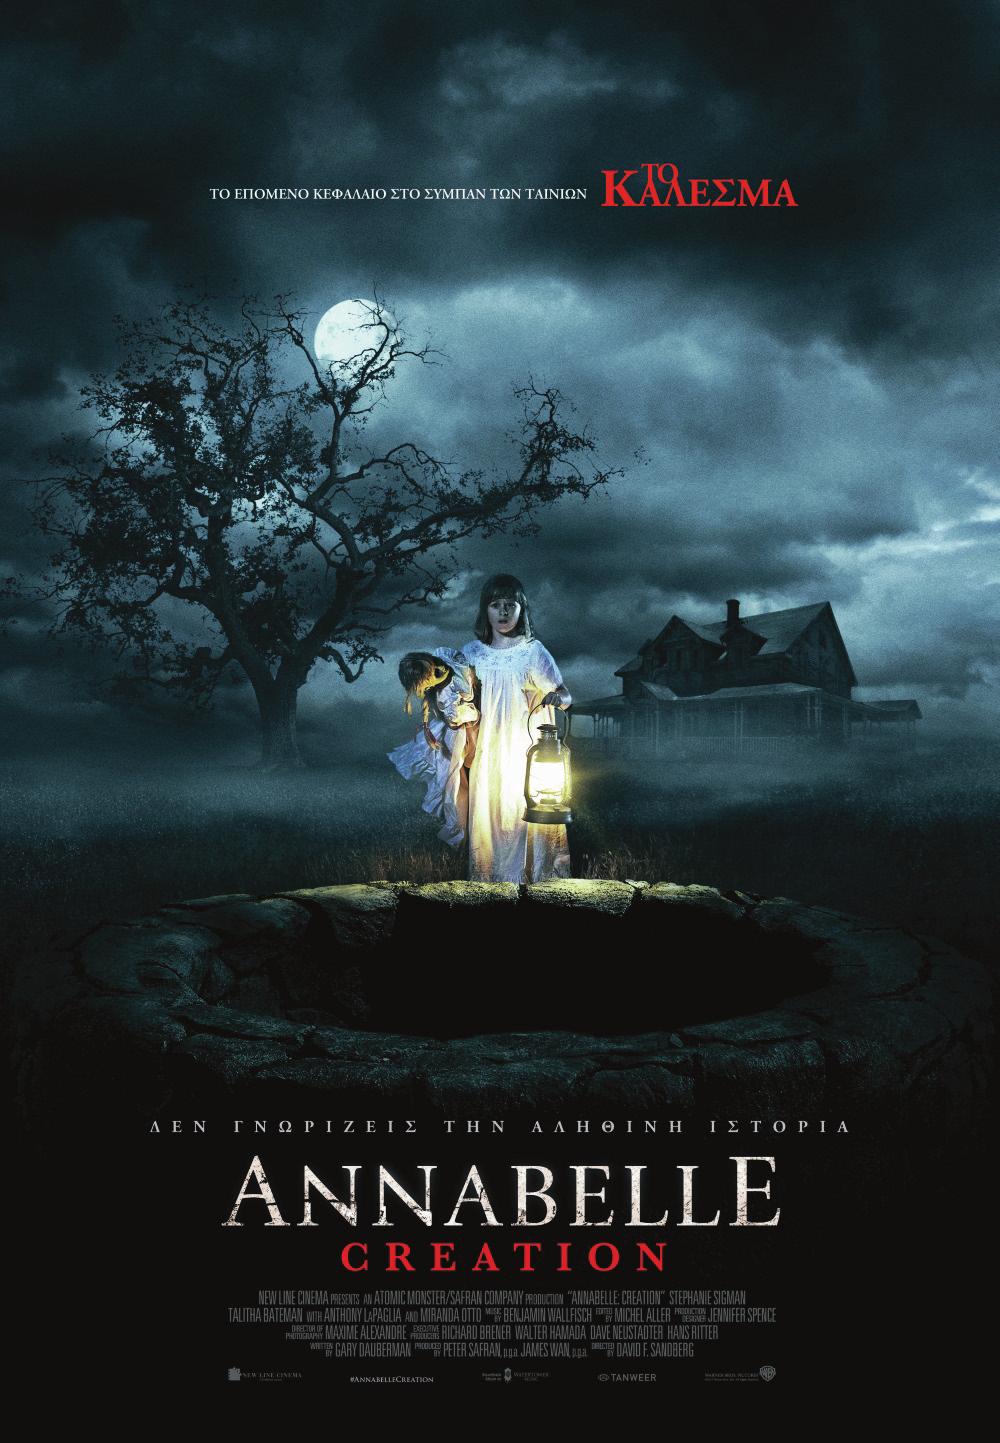 Από 21/9 έως 27/9 ANNABELLE: CREATION Υπόθεση: Στην ταινία «Annabelle: Creation» αρκετά χρόνια μετά τον τραγικό θάνατο της μικρής τους κόρης, ένας κουκλοποιός και η σύζυγος